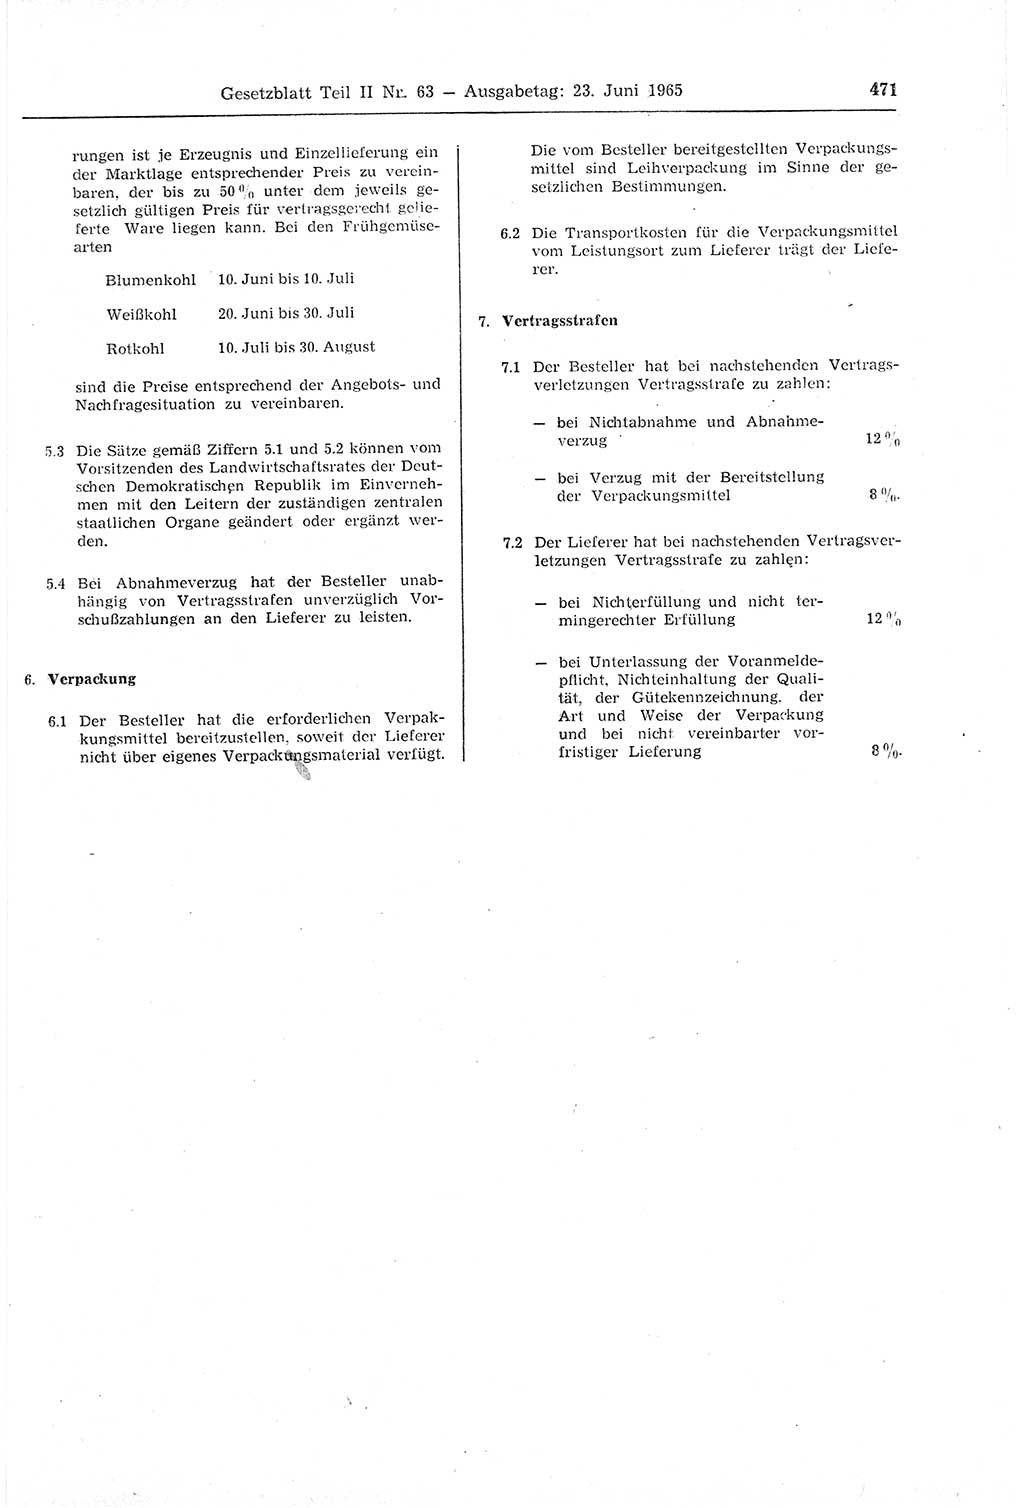 Gesetzblatt (GBl.) der Deutschen Demokratischen Republik (DDR) Teil ⅠⅠ 1965, Seite 471 (GBl. DDR ⅠⅠ 1965, S. 471)